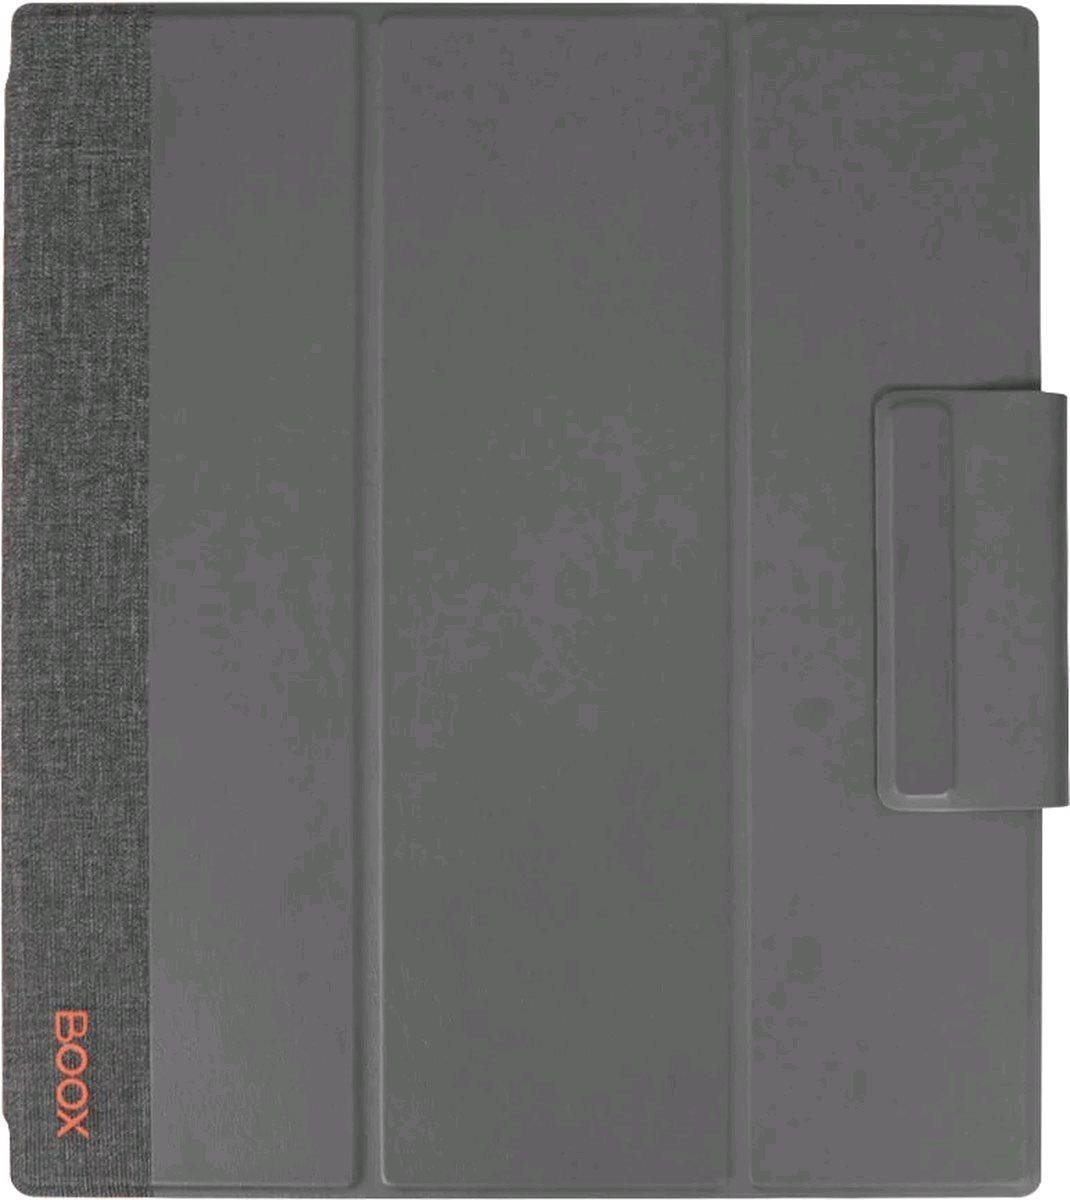 Pouzdro na čtečku knih ONYX BOOX pouzdro pro NOTE AIR 2 PLUS, magnetické, šedé